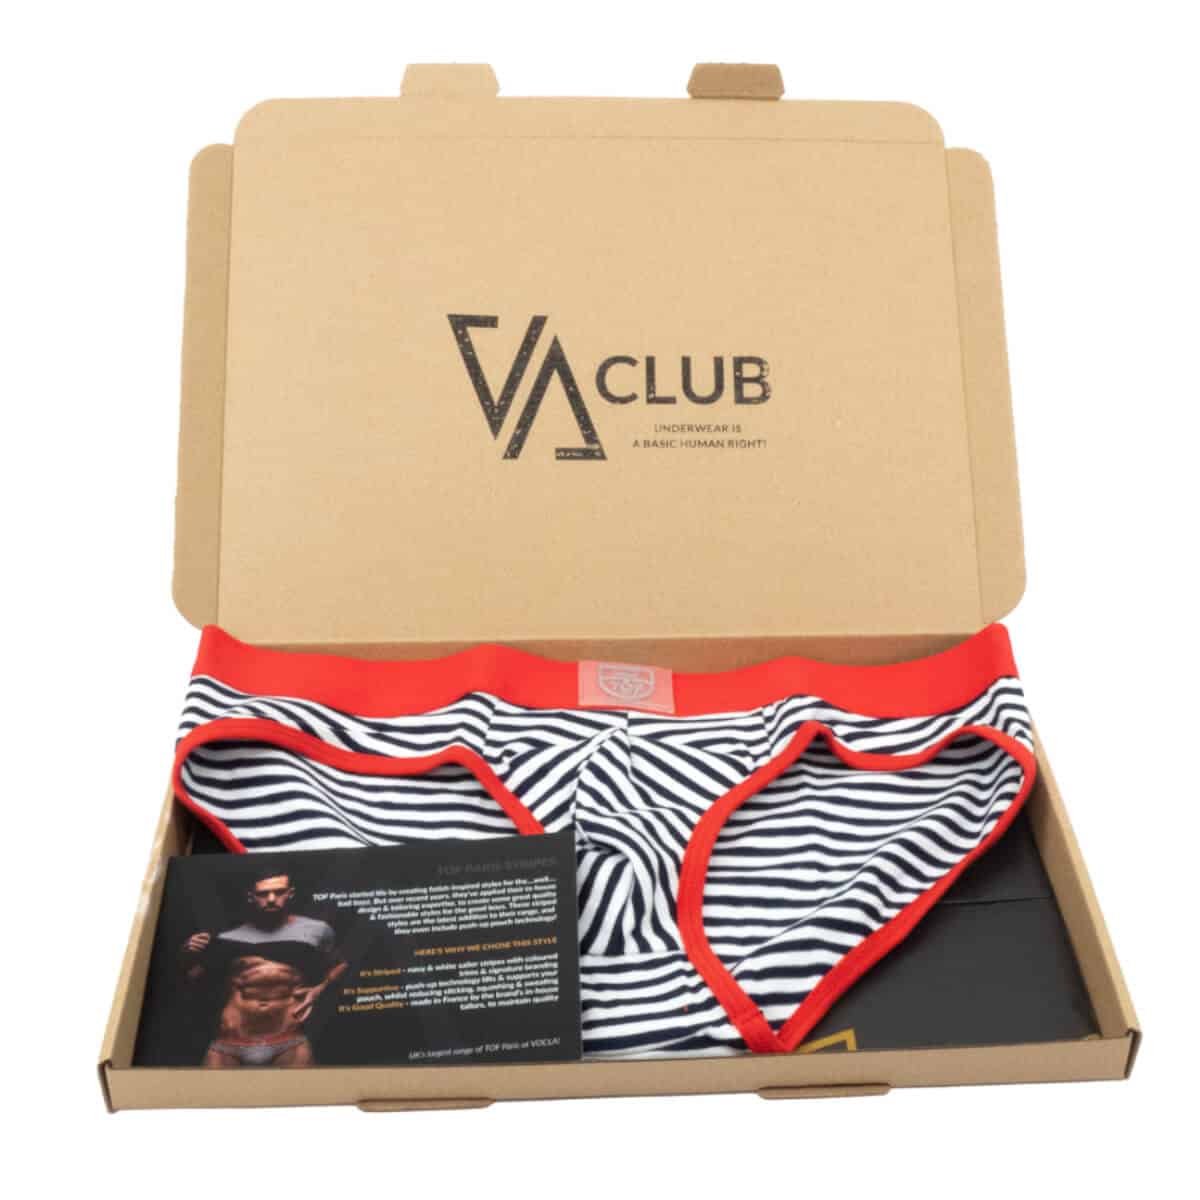 Men's Underwear Club